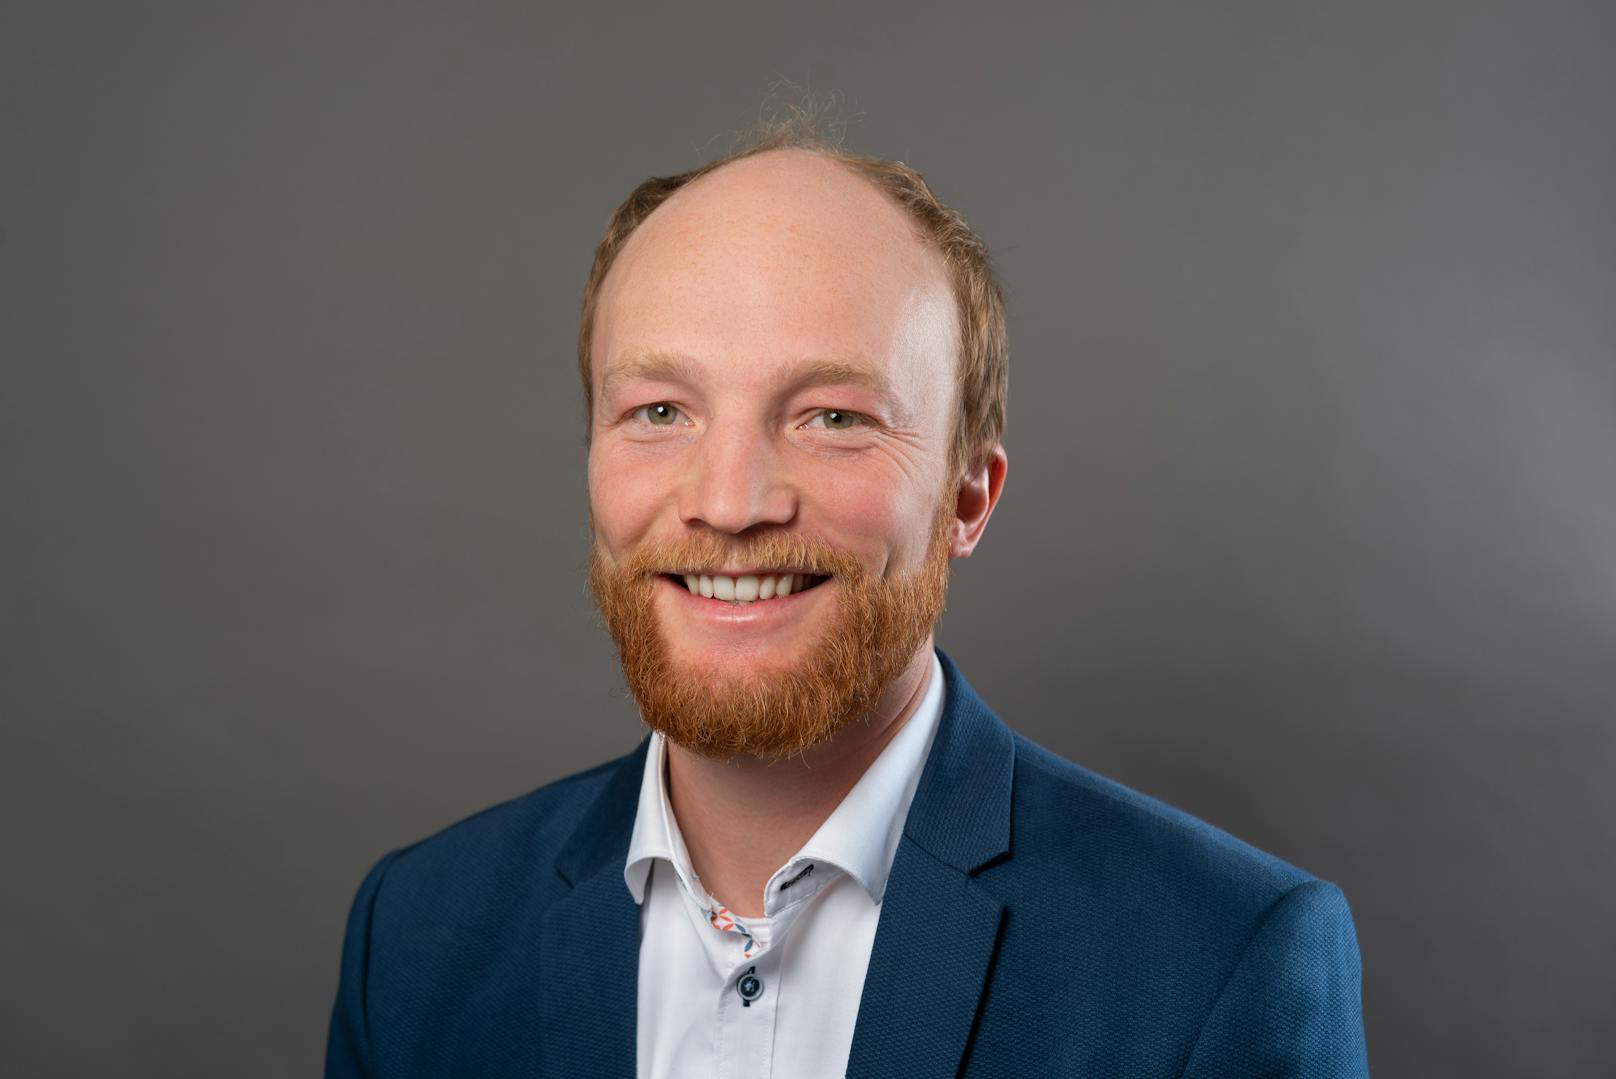 VCÖ-Verkehrsexperte Michael Schwendinger